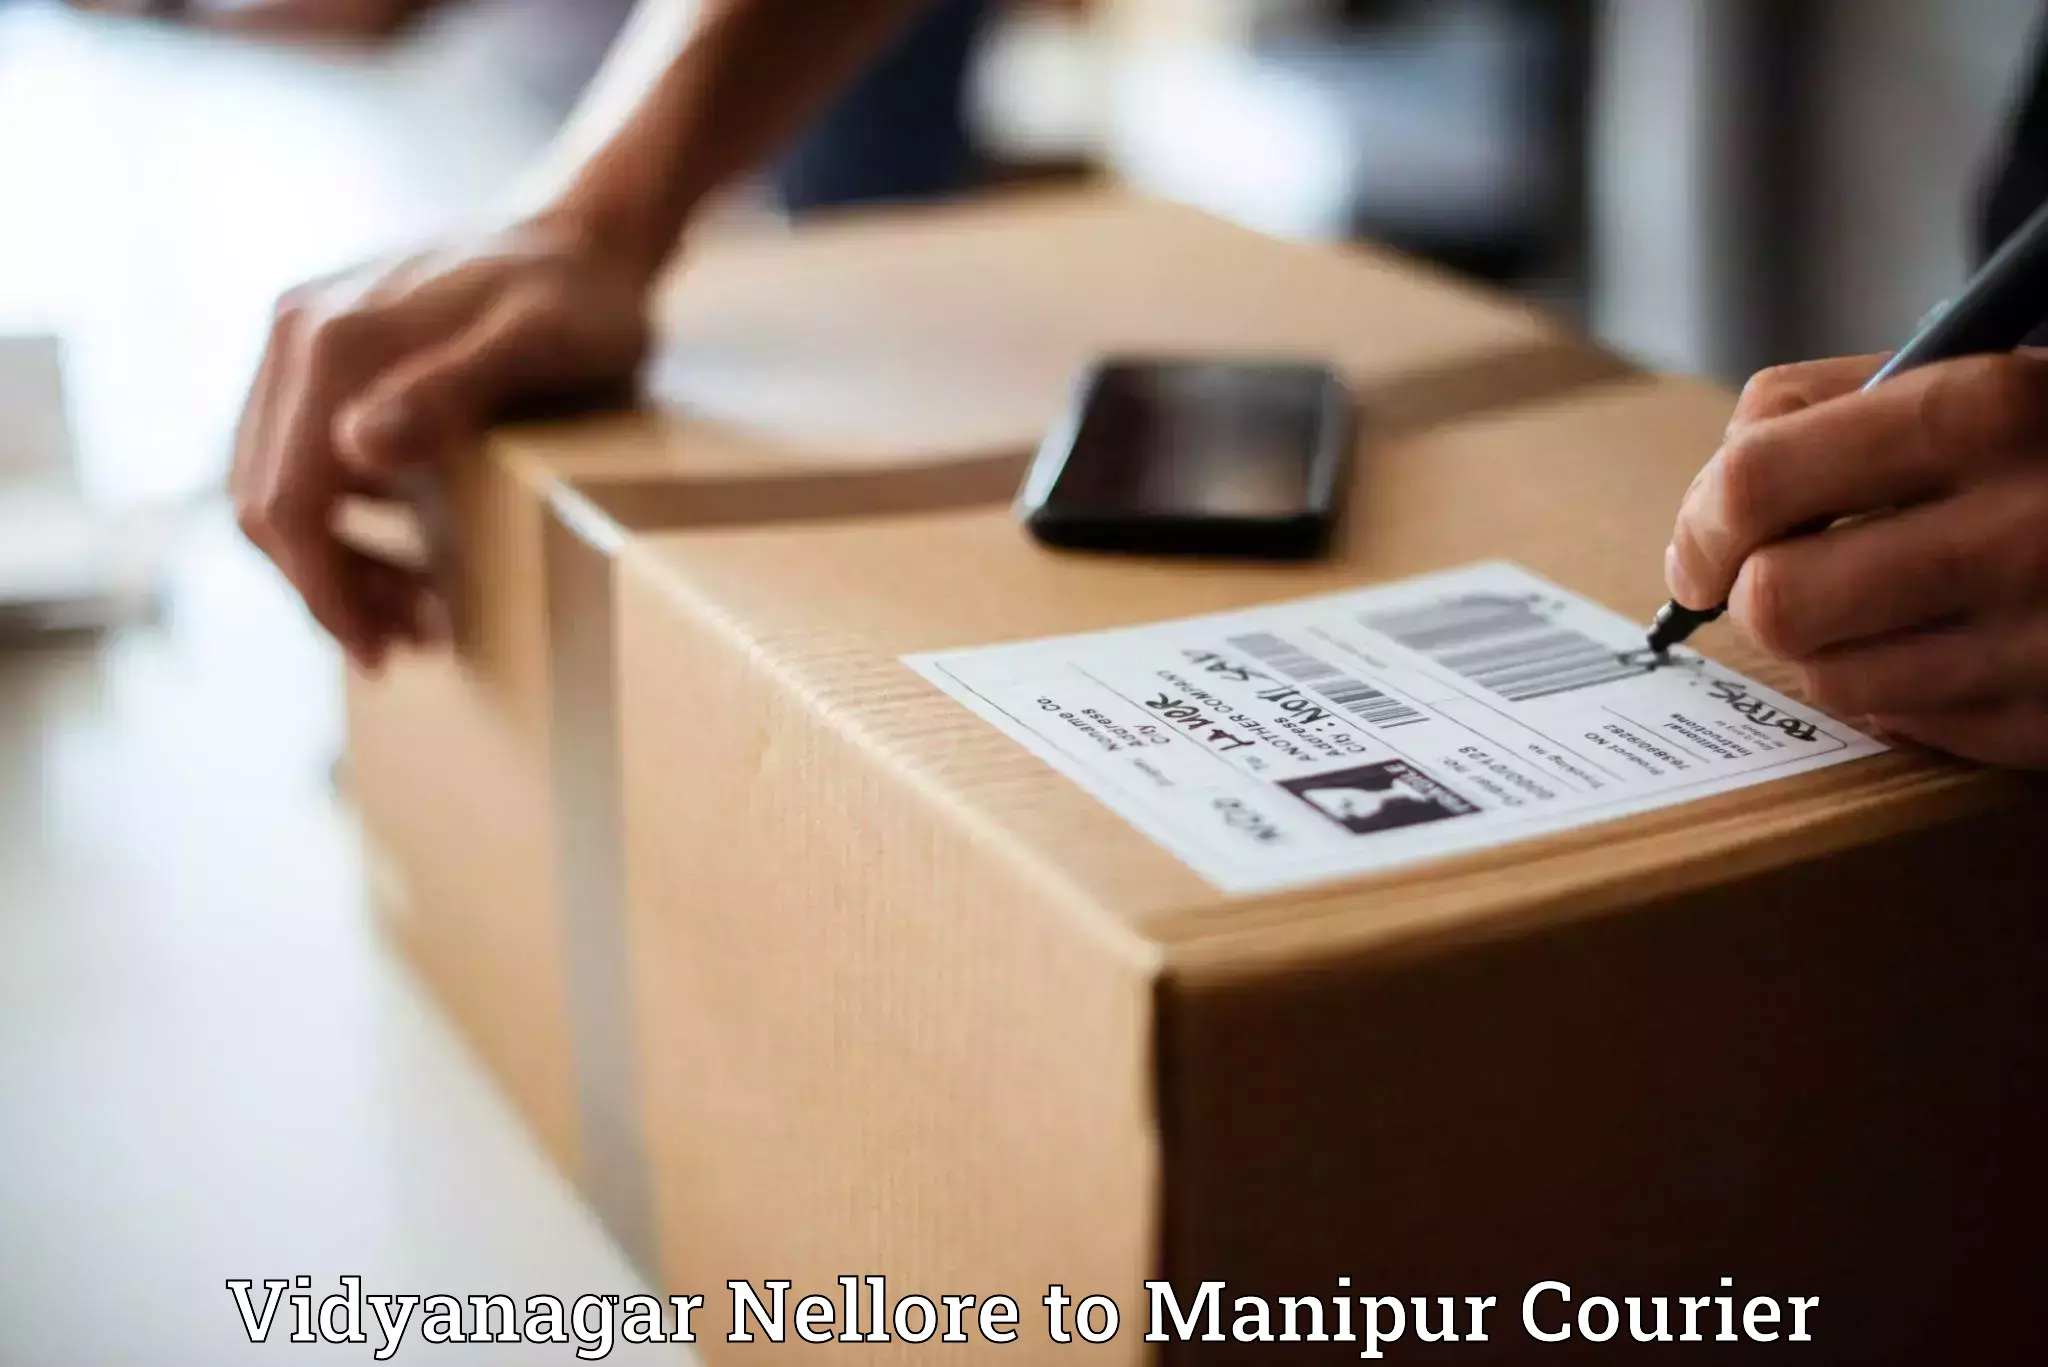 User-friendly delivery service Vidyanagar Nellore to Kanti